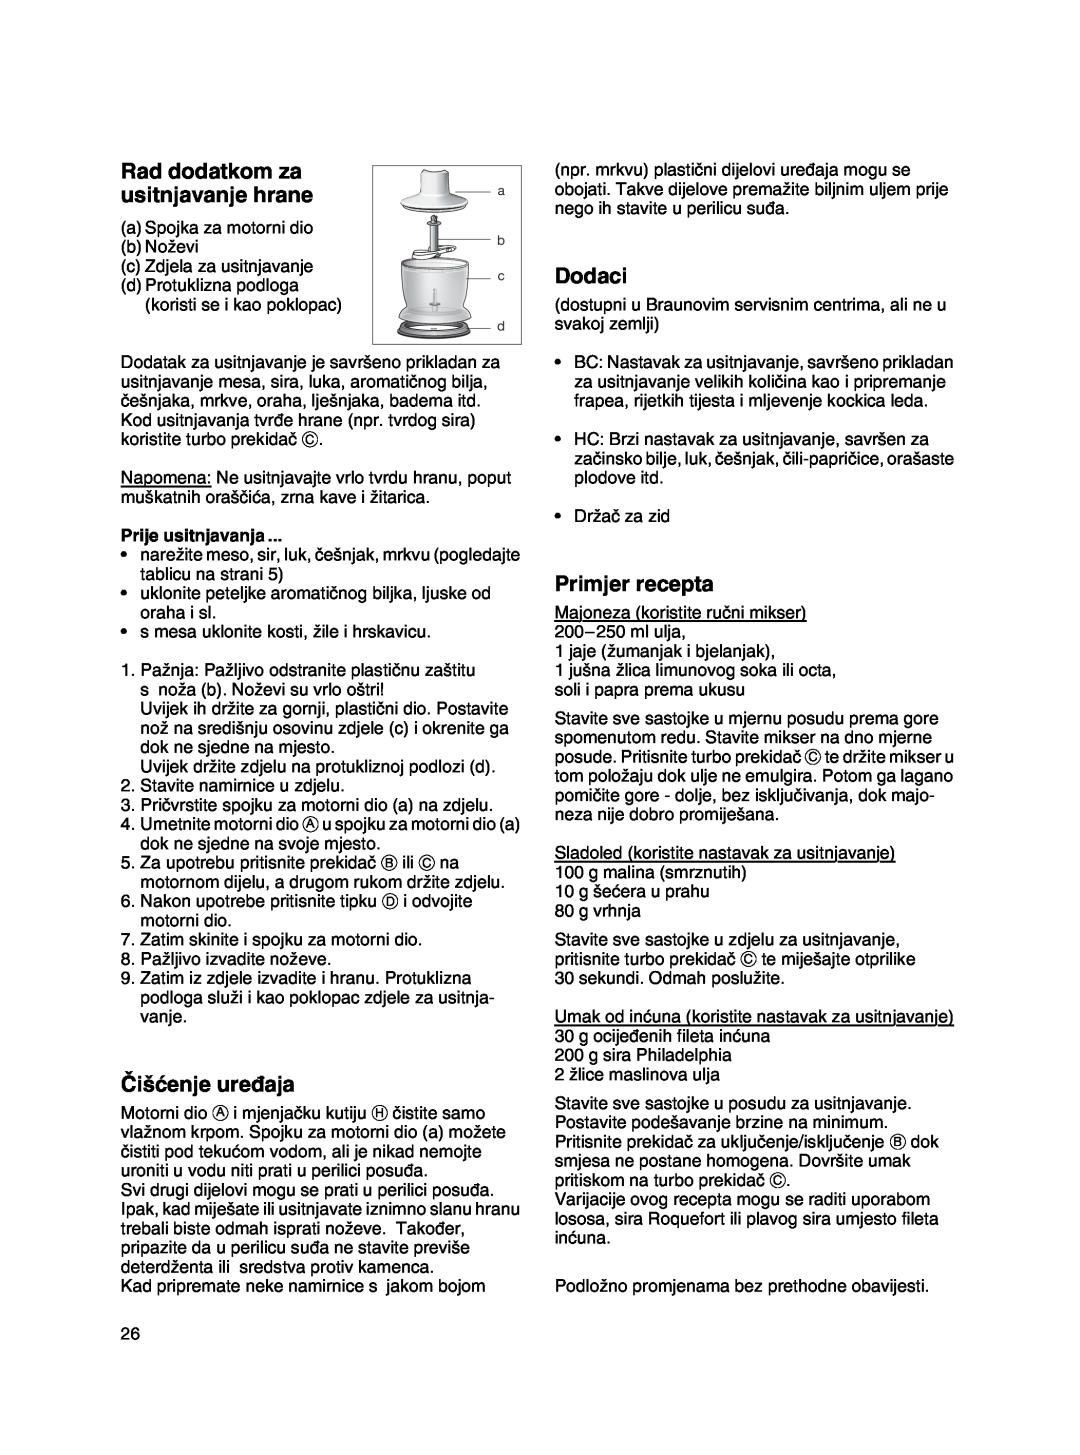 Braun MR 500 manual Rad dodatkom za, usitnjavanje hrane, âi‰çenje ure∂aja, Dodaci, Primjer recepta, Prije usitnjavanja 